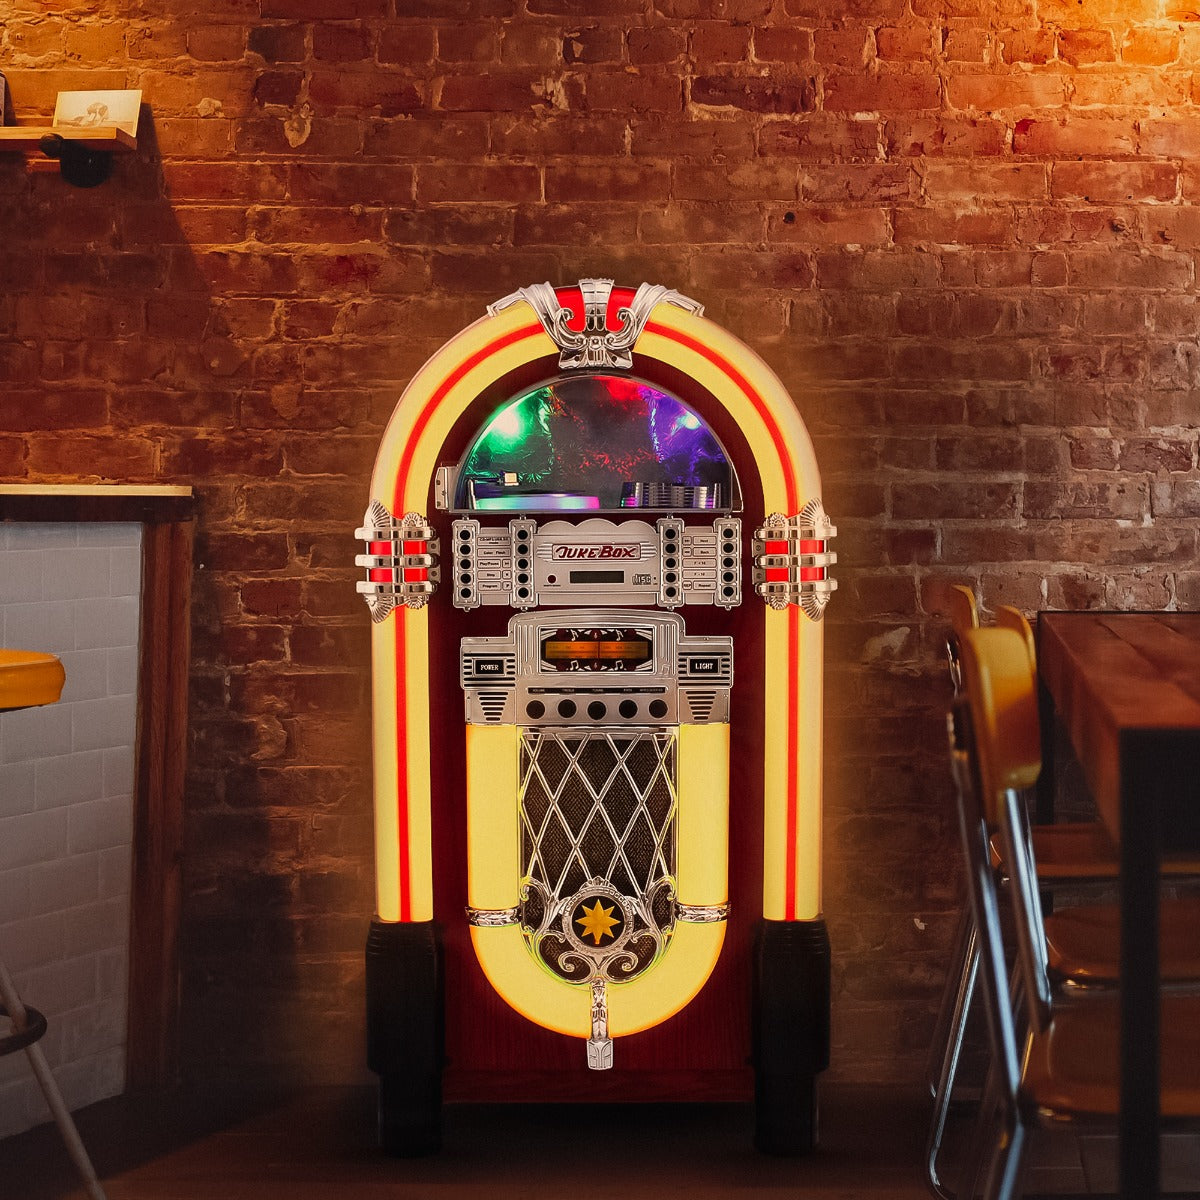 Retro Style Illuminated Jukebox Sound System